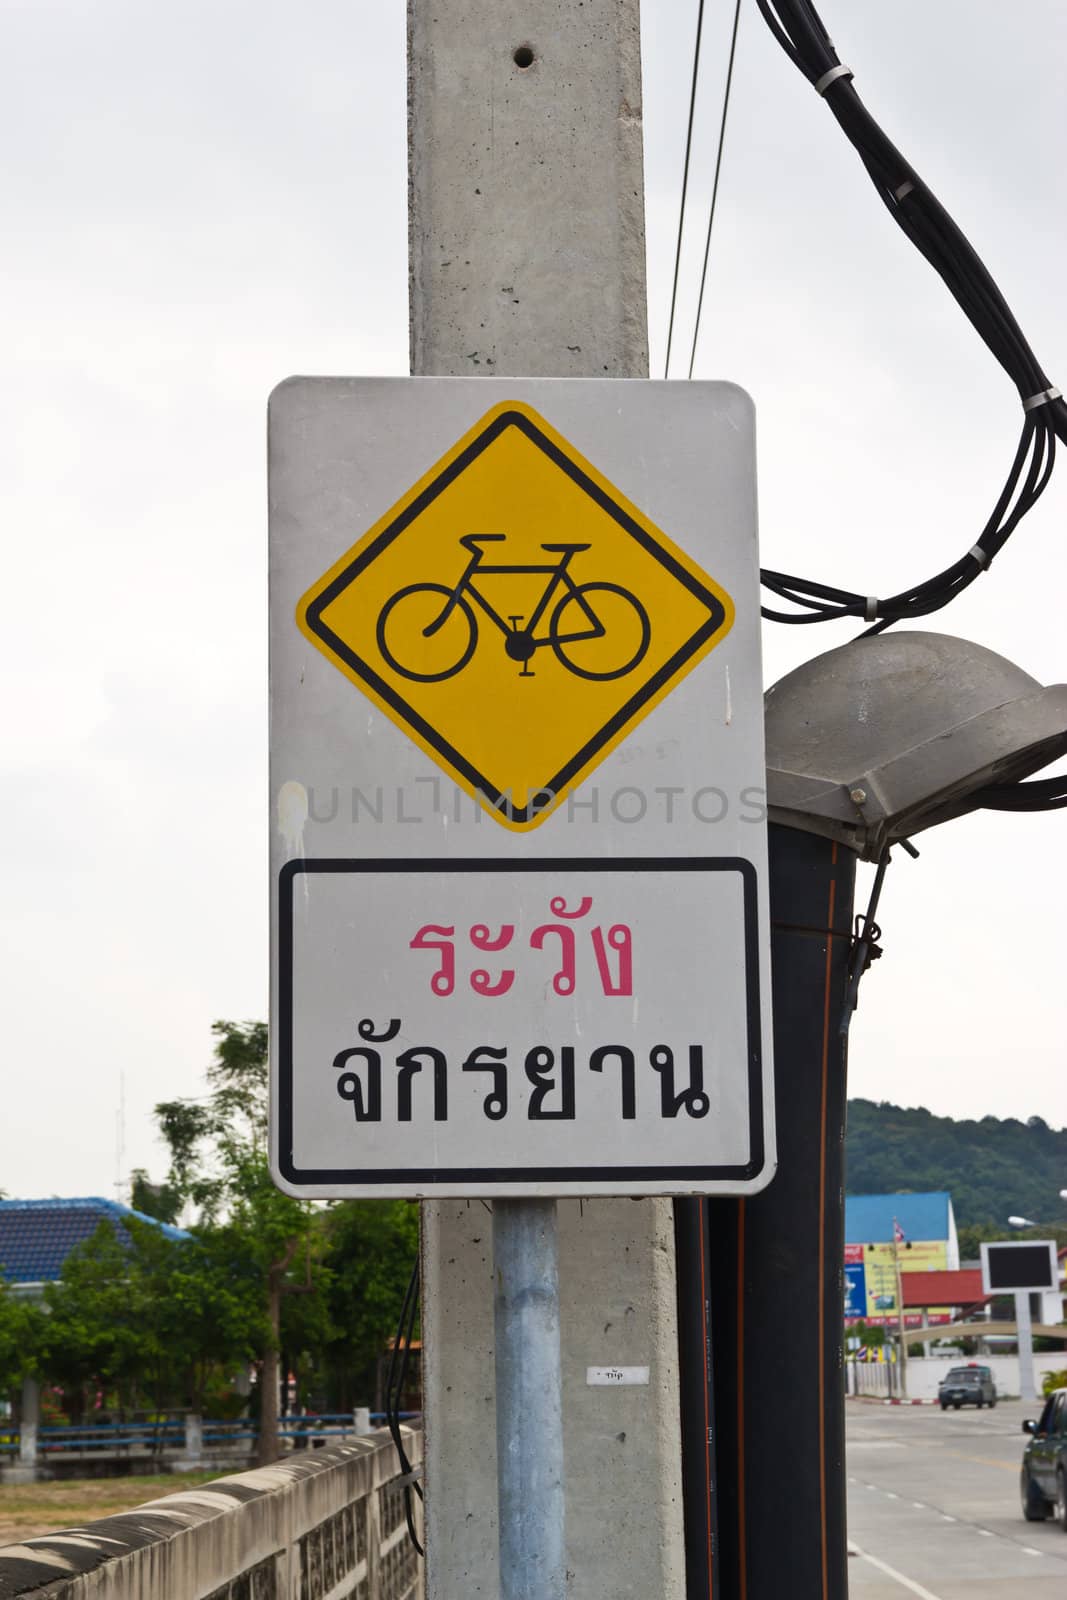 Bicycle sign, Bicycle Lane at chonburi thailand